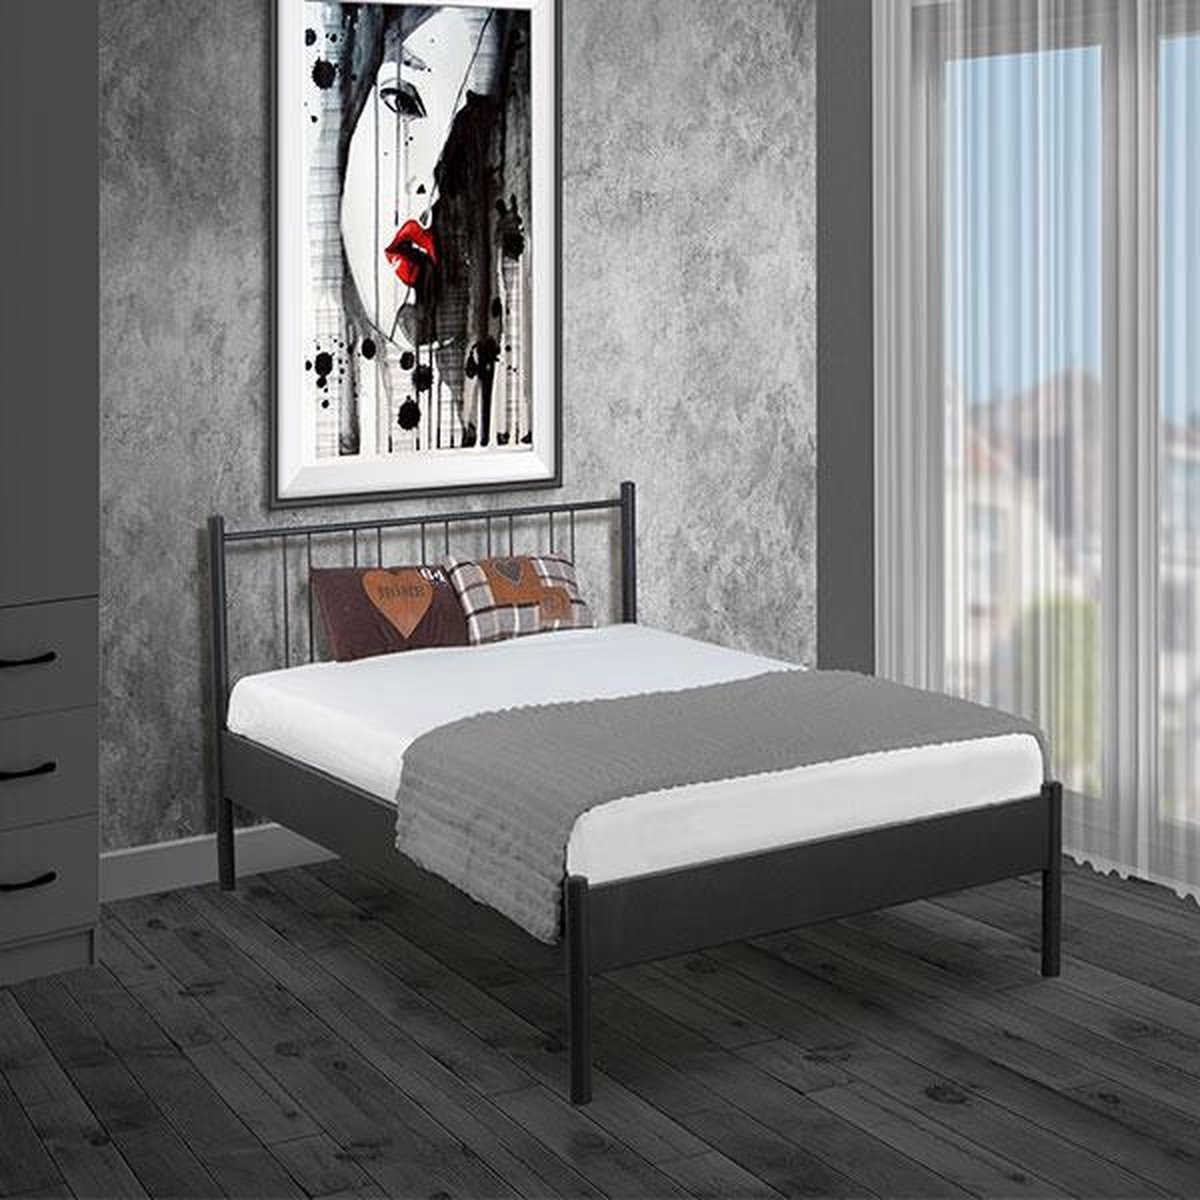 Bed Box Holland Metaal bed Moon zilver 140x200 lattenbodem matras tweepersoons Design